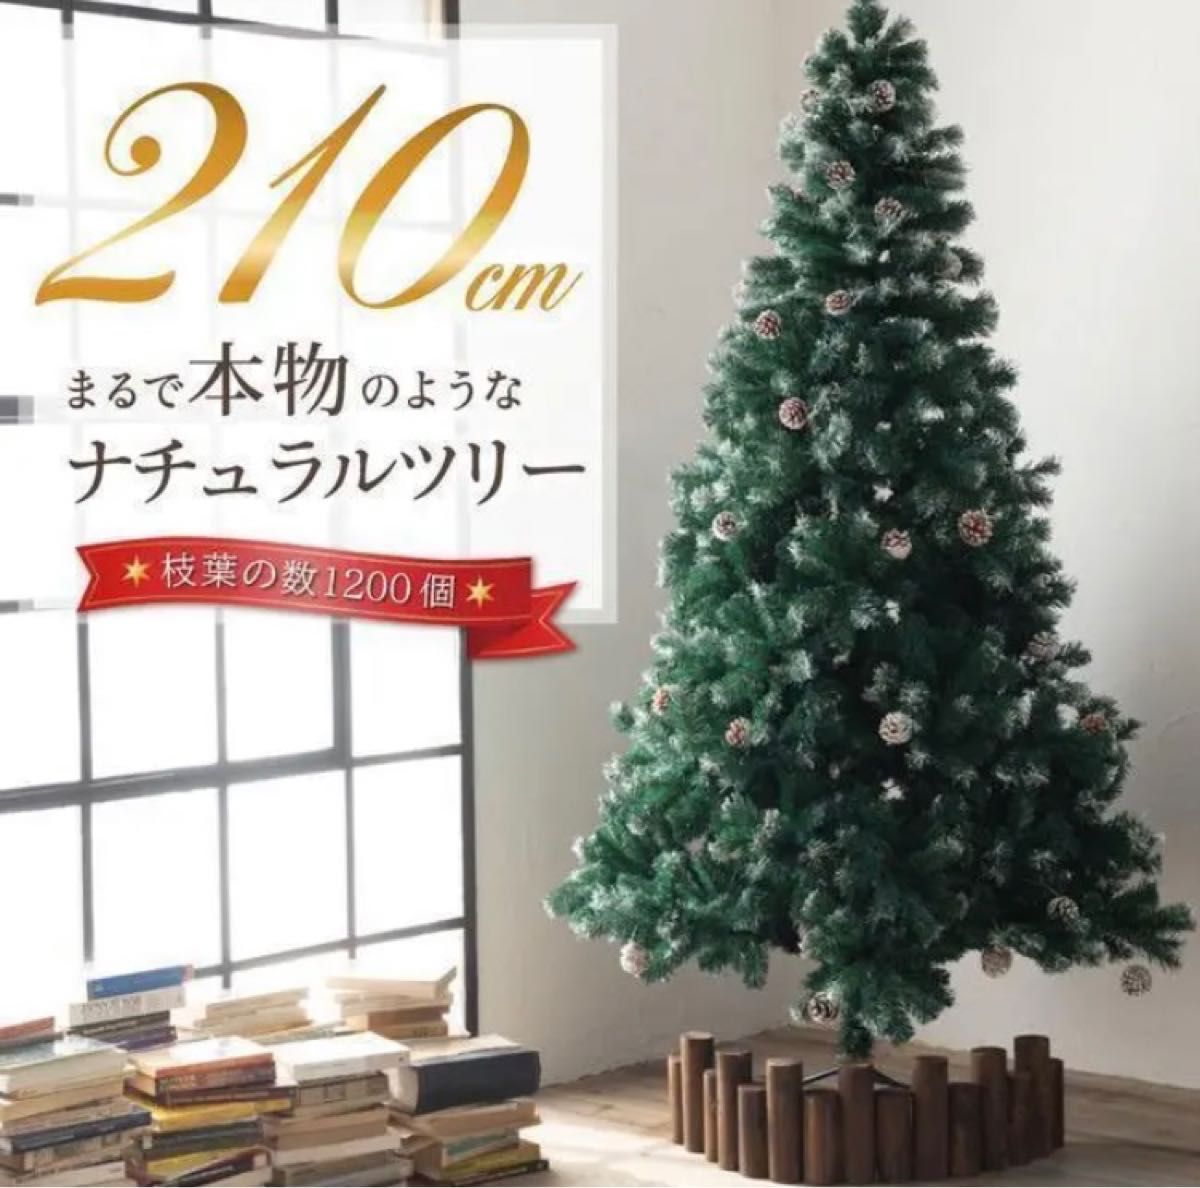 クリスマスツリーまつぼっくり 210cm 雪付き 北欧風 松ぼっくり 雪化粧 スノー 150cm 180cm インテリア ツリー